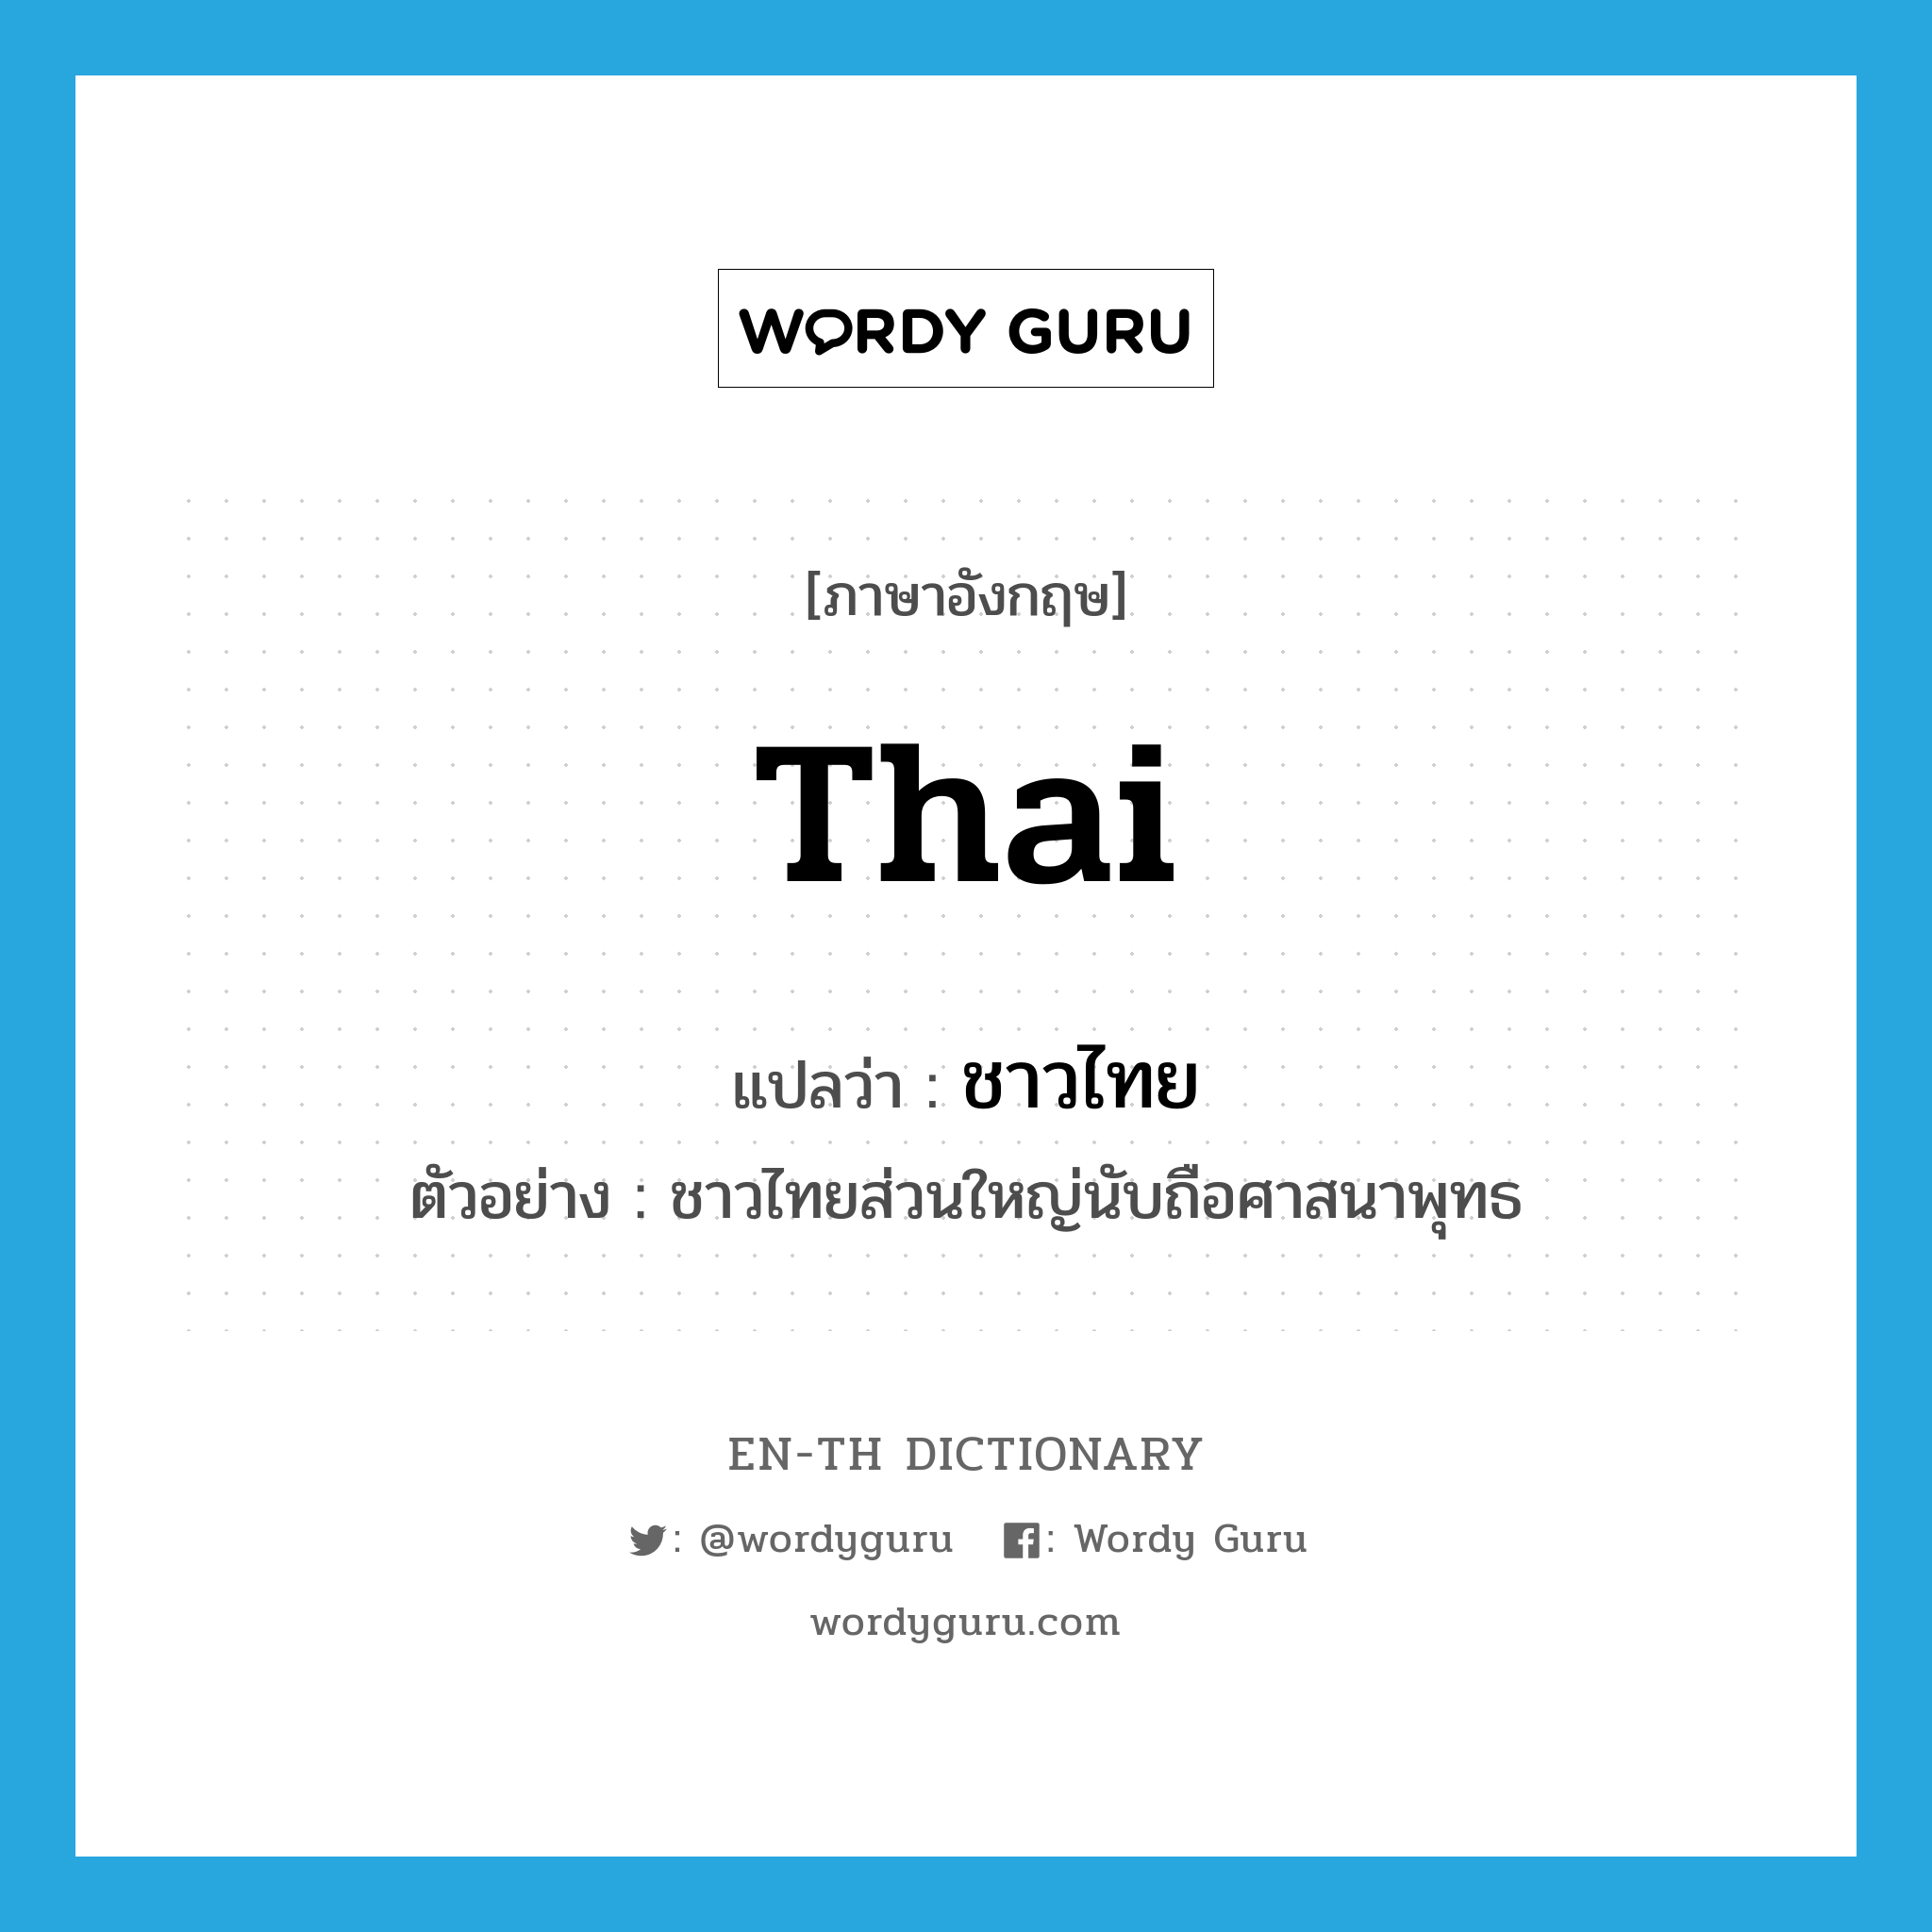 Thai แปลว่า?, คำศัพท์ภาษาอังกฤษ Thai แปลว่า ชาวไทย ประเภท N ตัวอย่าง ชาวไทยส่วนใหญ่นับถือศาสนาพุทธ หมวด N